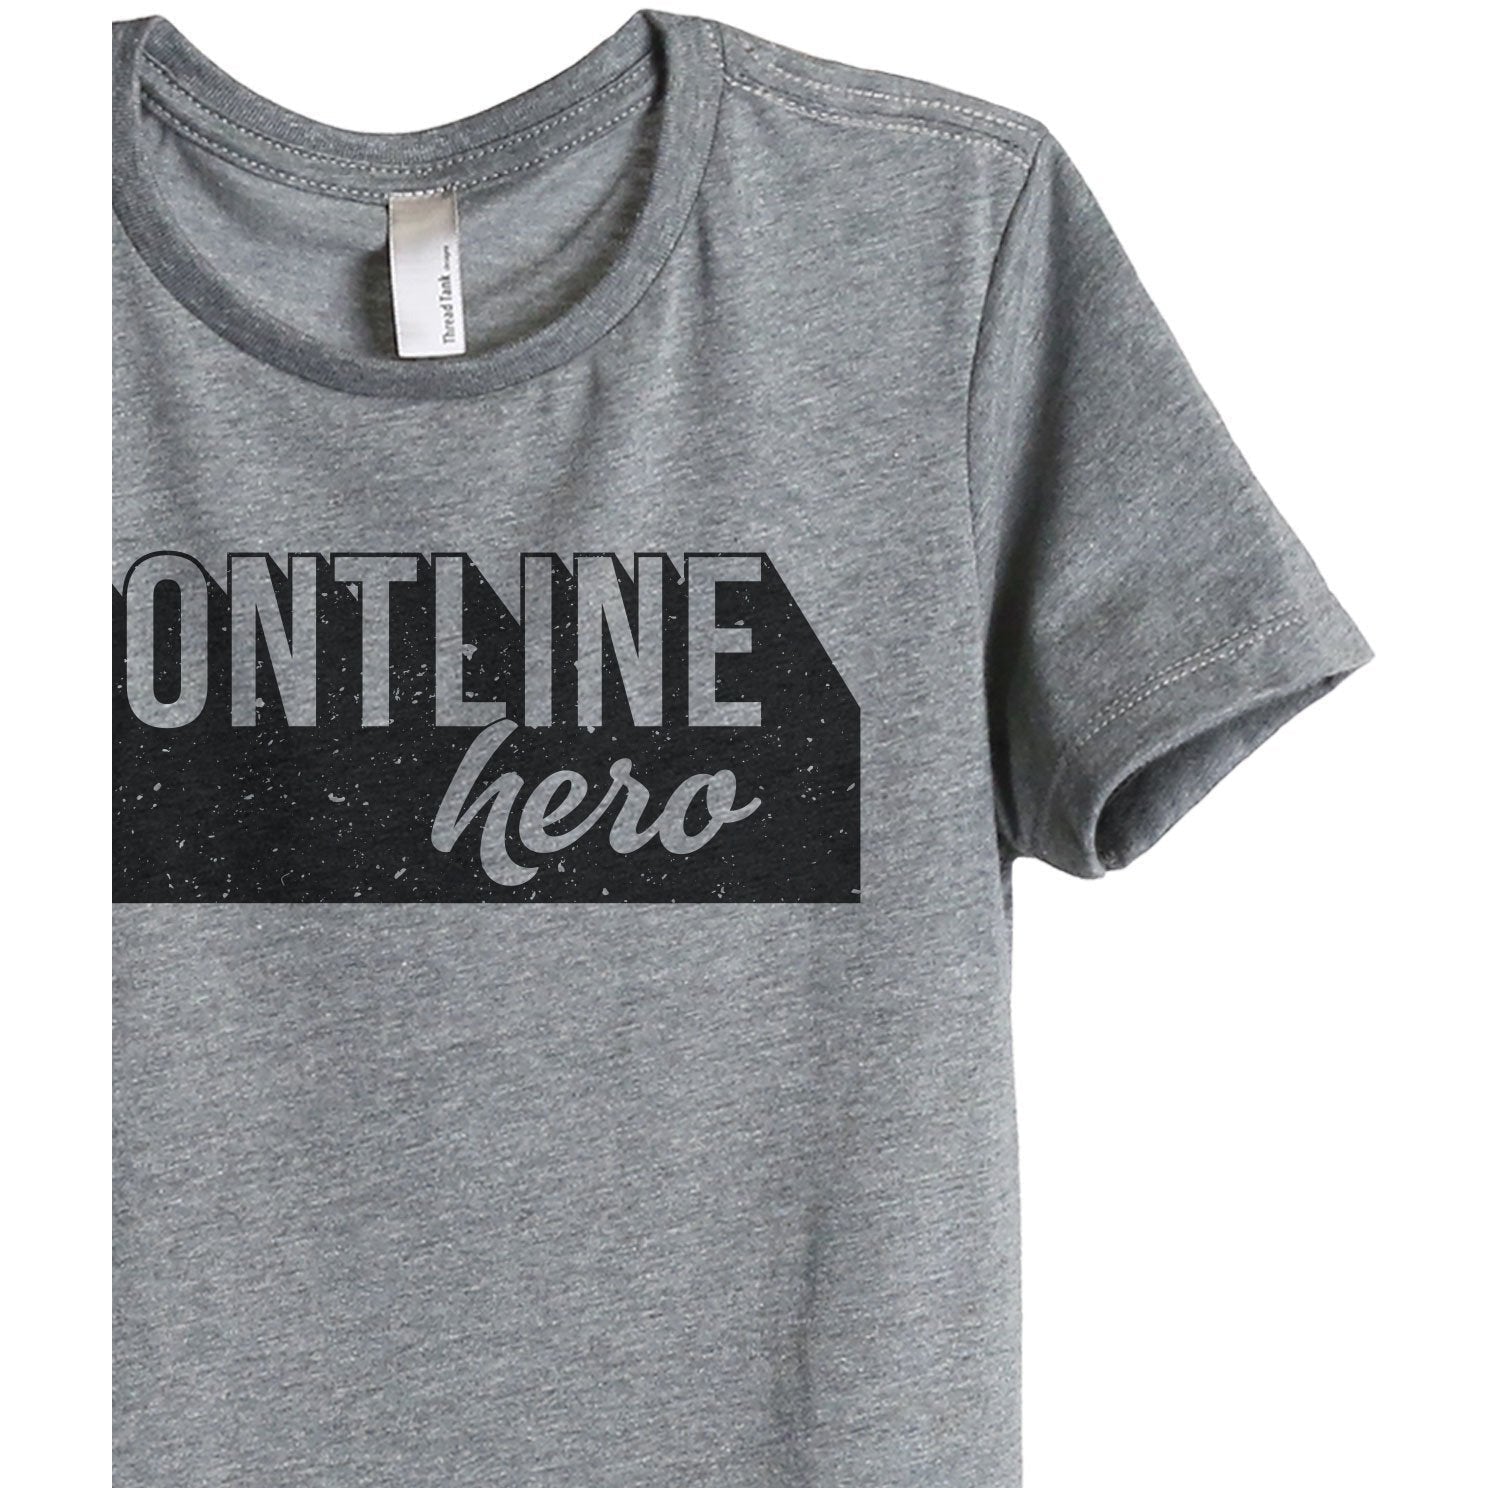 Frontline Hero Women's Relaxed Crewneck T-Shirt Top Tee Heather Grey